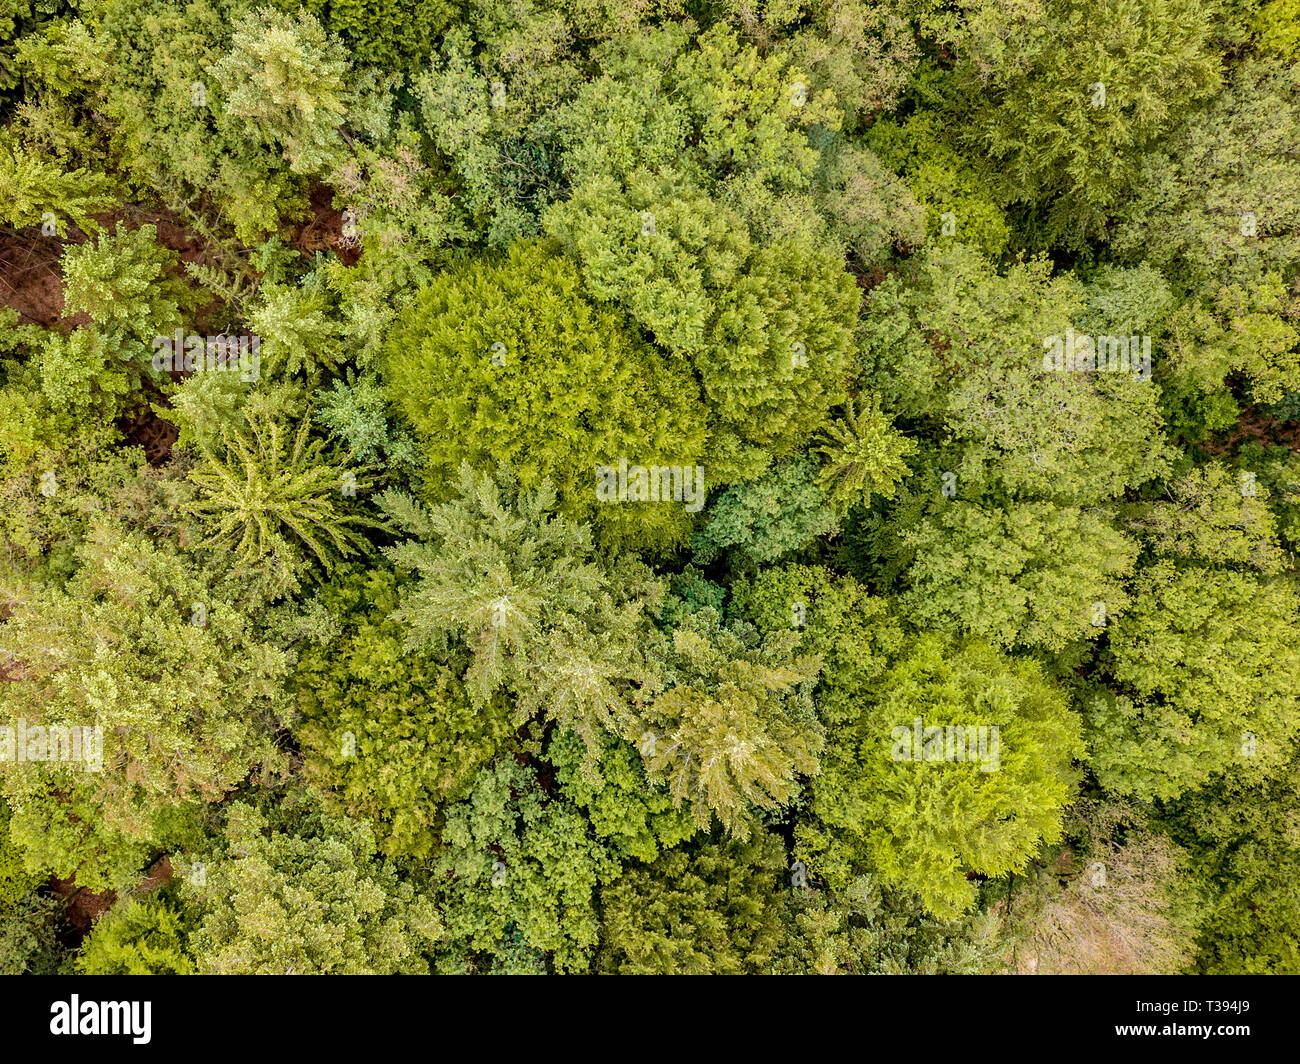 Antenna vista dall'alto in basso di bosco misto di conifere e latifoglie. Drone fotografia. Foto Stock